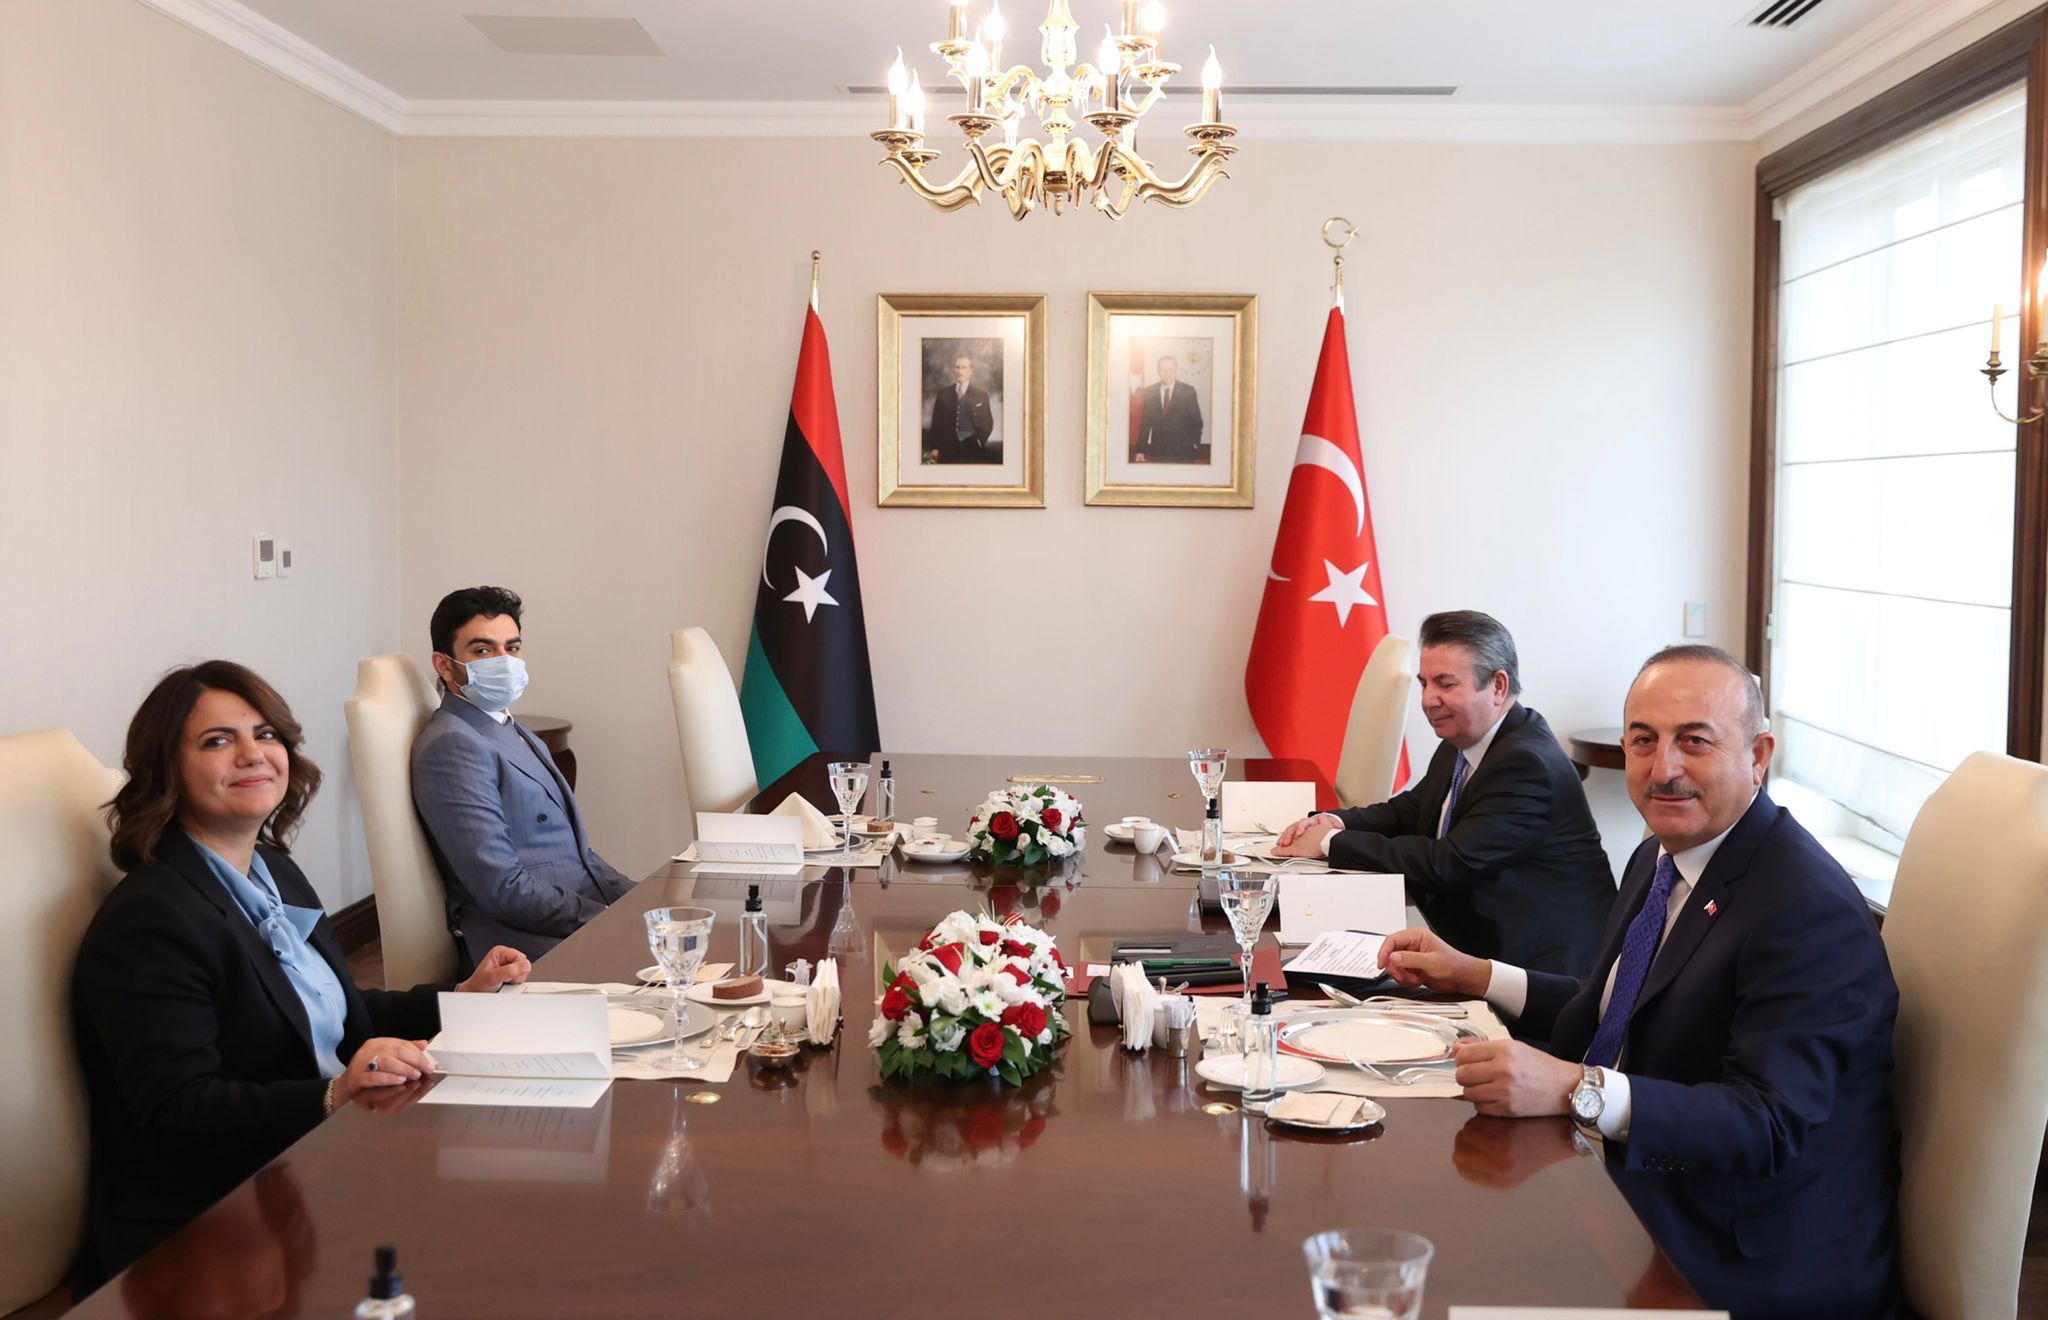 Setkání Tureckého ministra zahraničí Mevlüta Çavuşoğlu s Najlou Mangoushem, ministryní zahraničí Libye